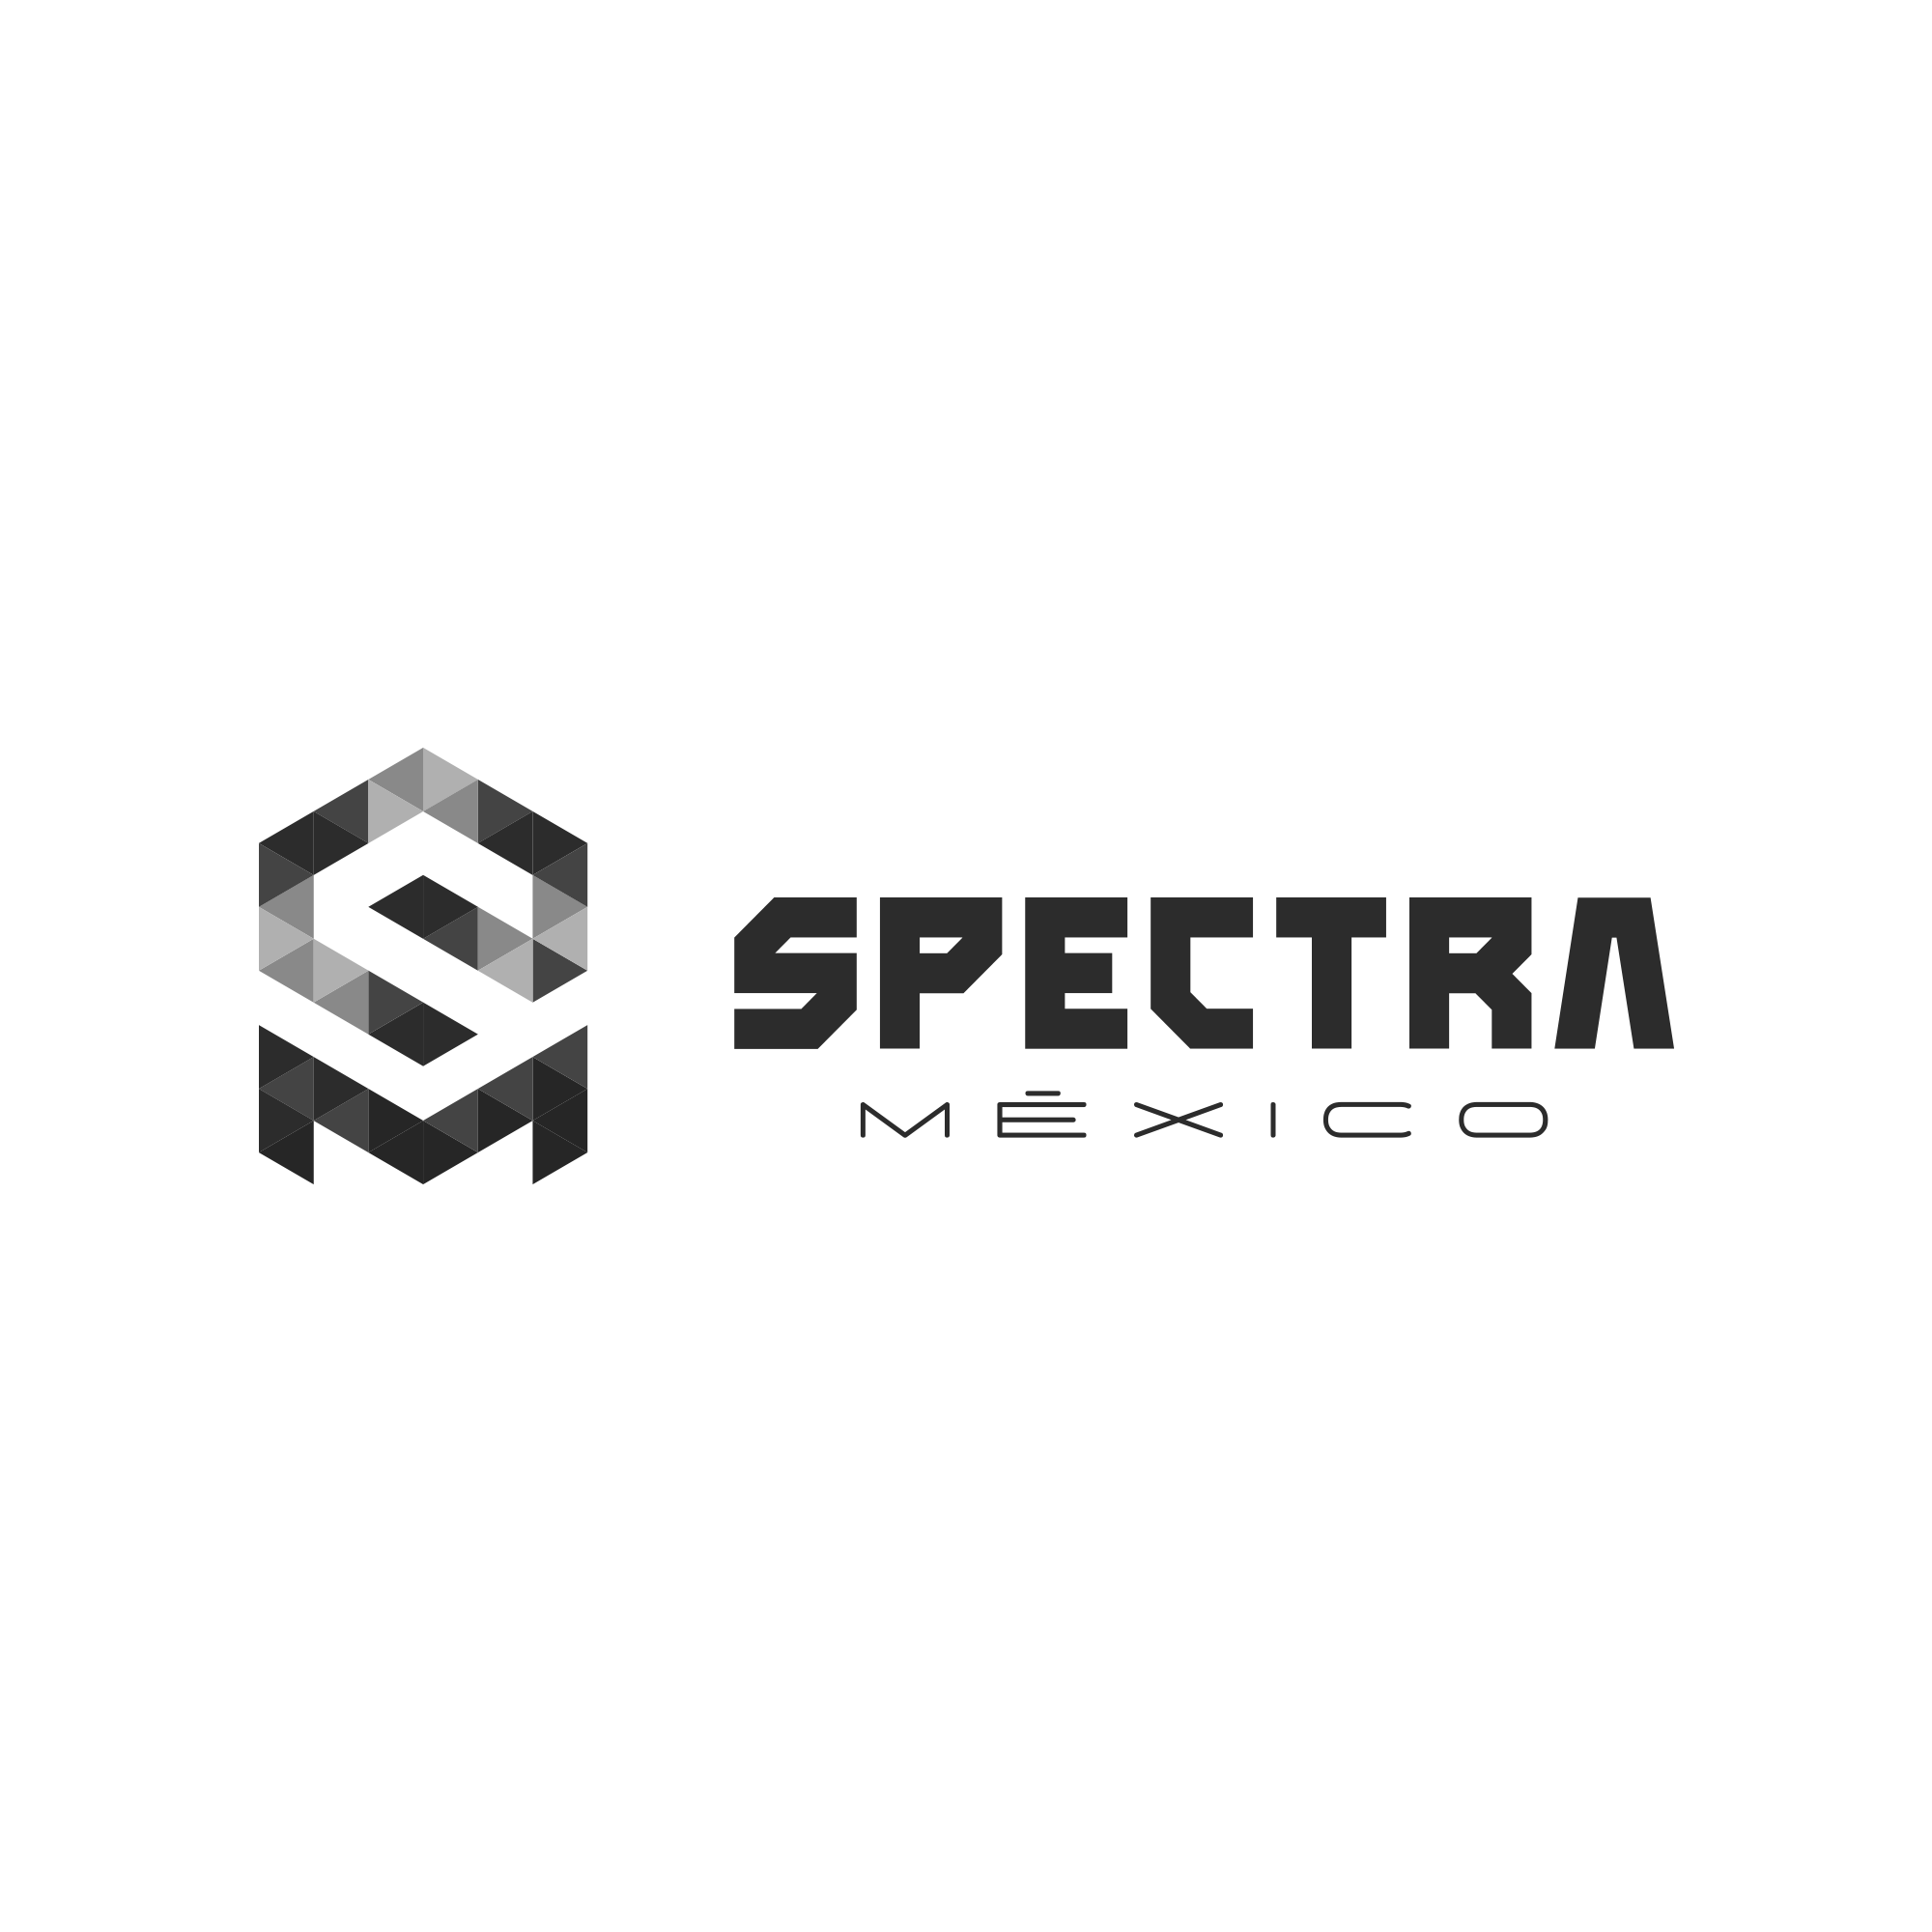 Tienda de articulos de pesca Spectra en México